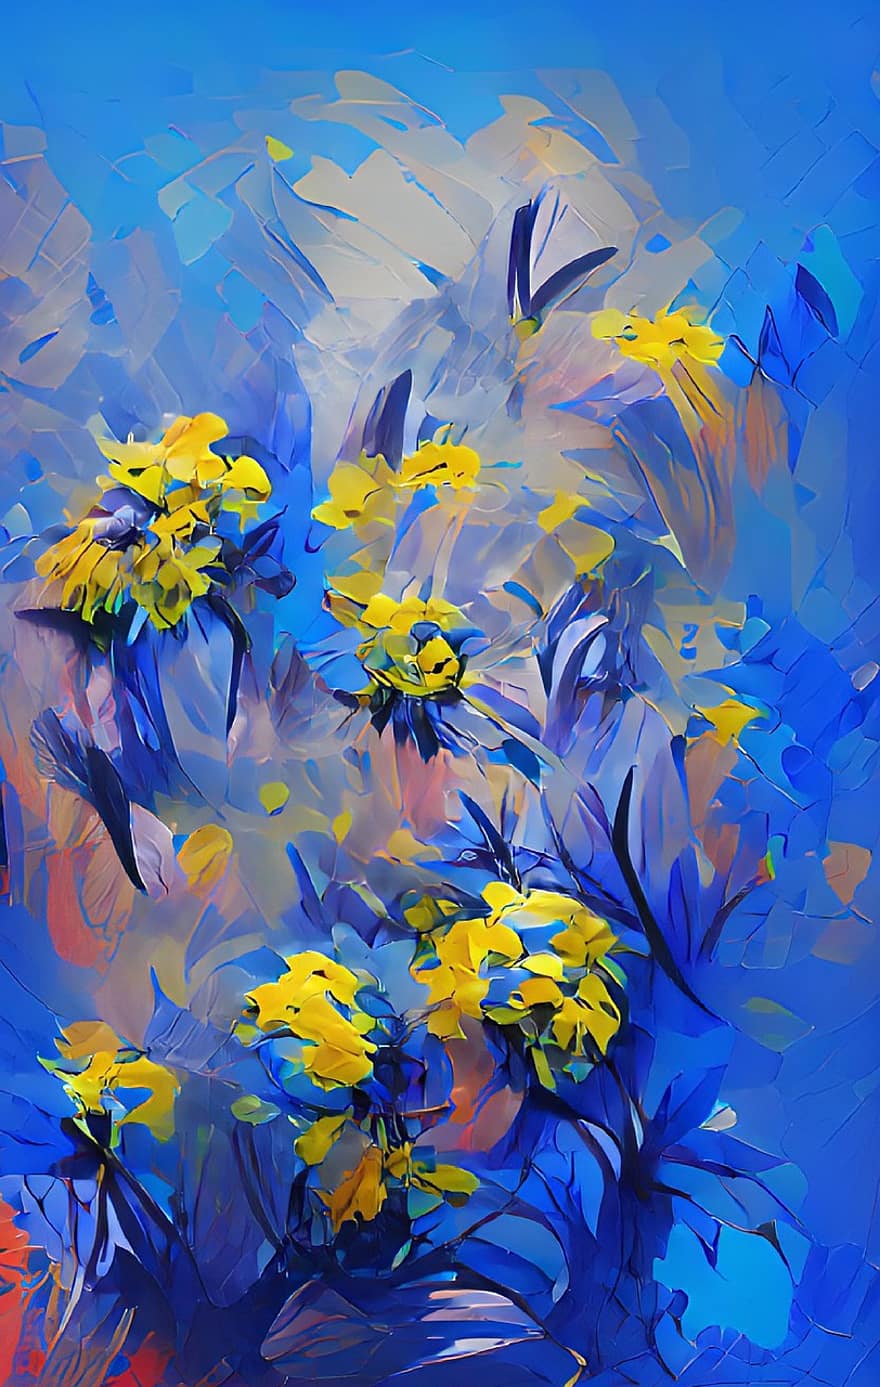 những bông hoa, trừu tượng, ukraine, tác phẩm nghệ thuật, bức vẽ, sáng tạo, cây, tầng lớp, hình minh họa, màu xanh da trời, màu vàng